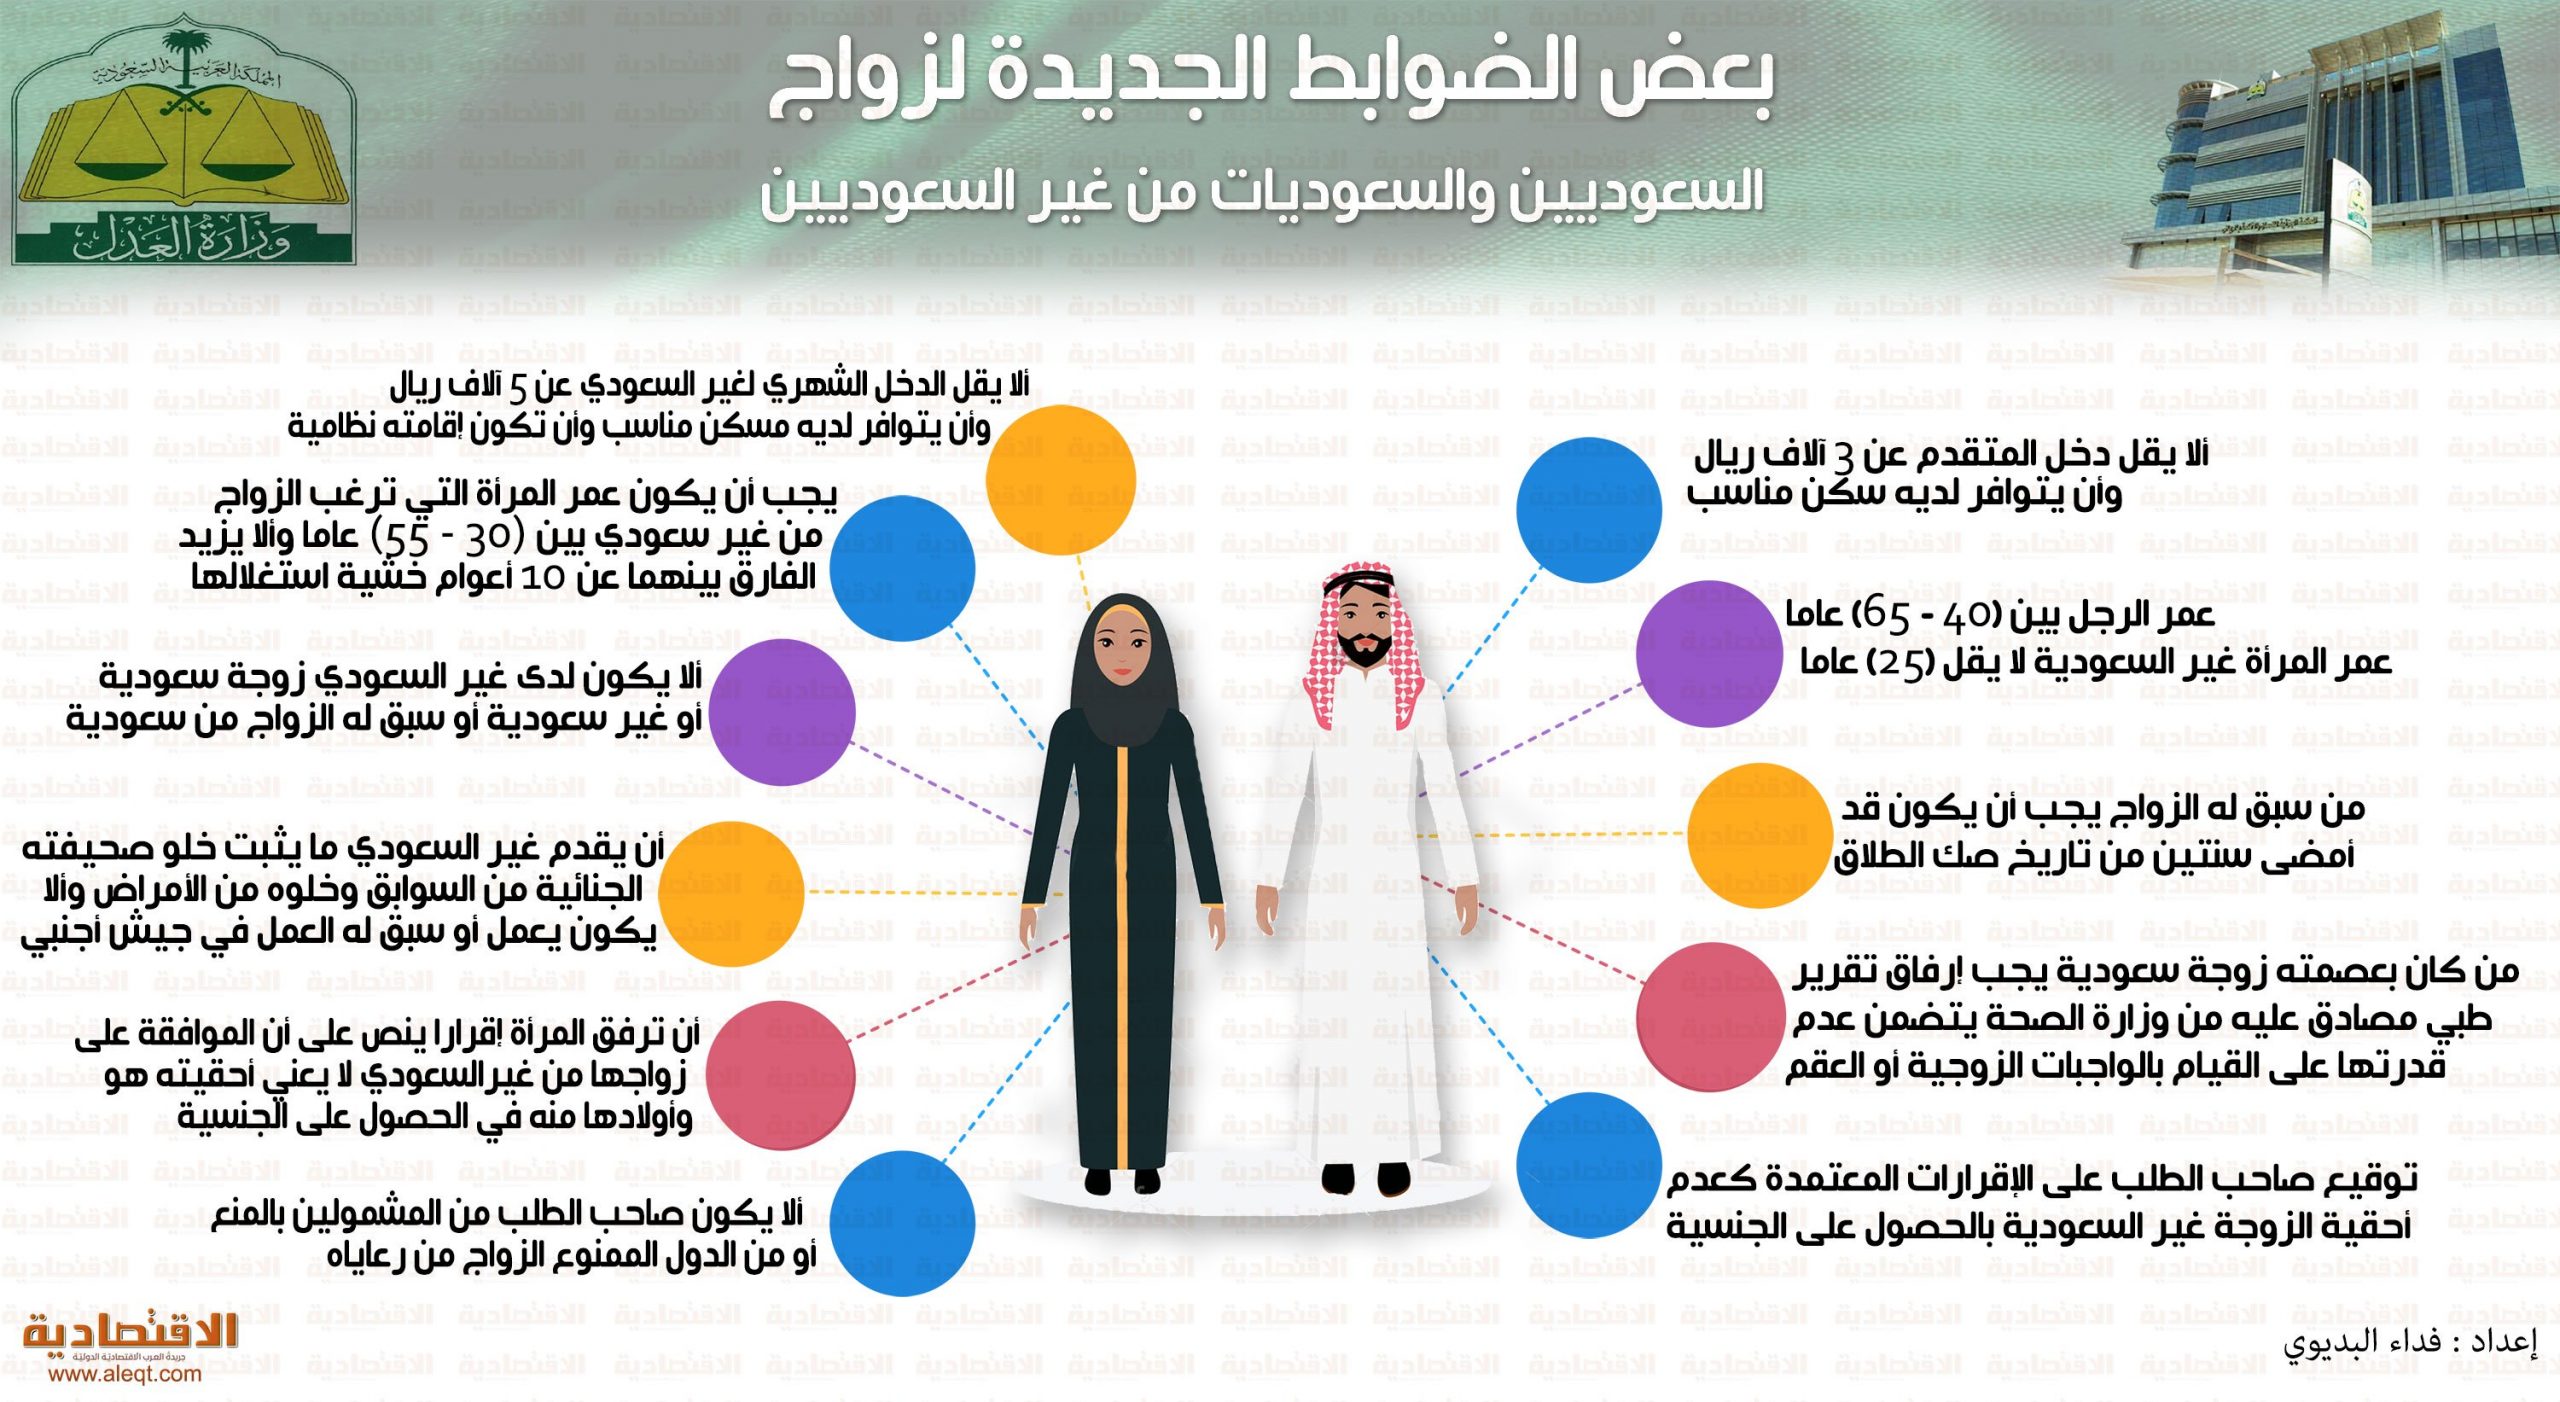 والزواج موقع للتعارف سعودية للزواج تسجيل بدون موقع يازواج